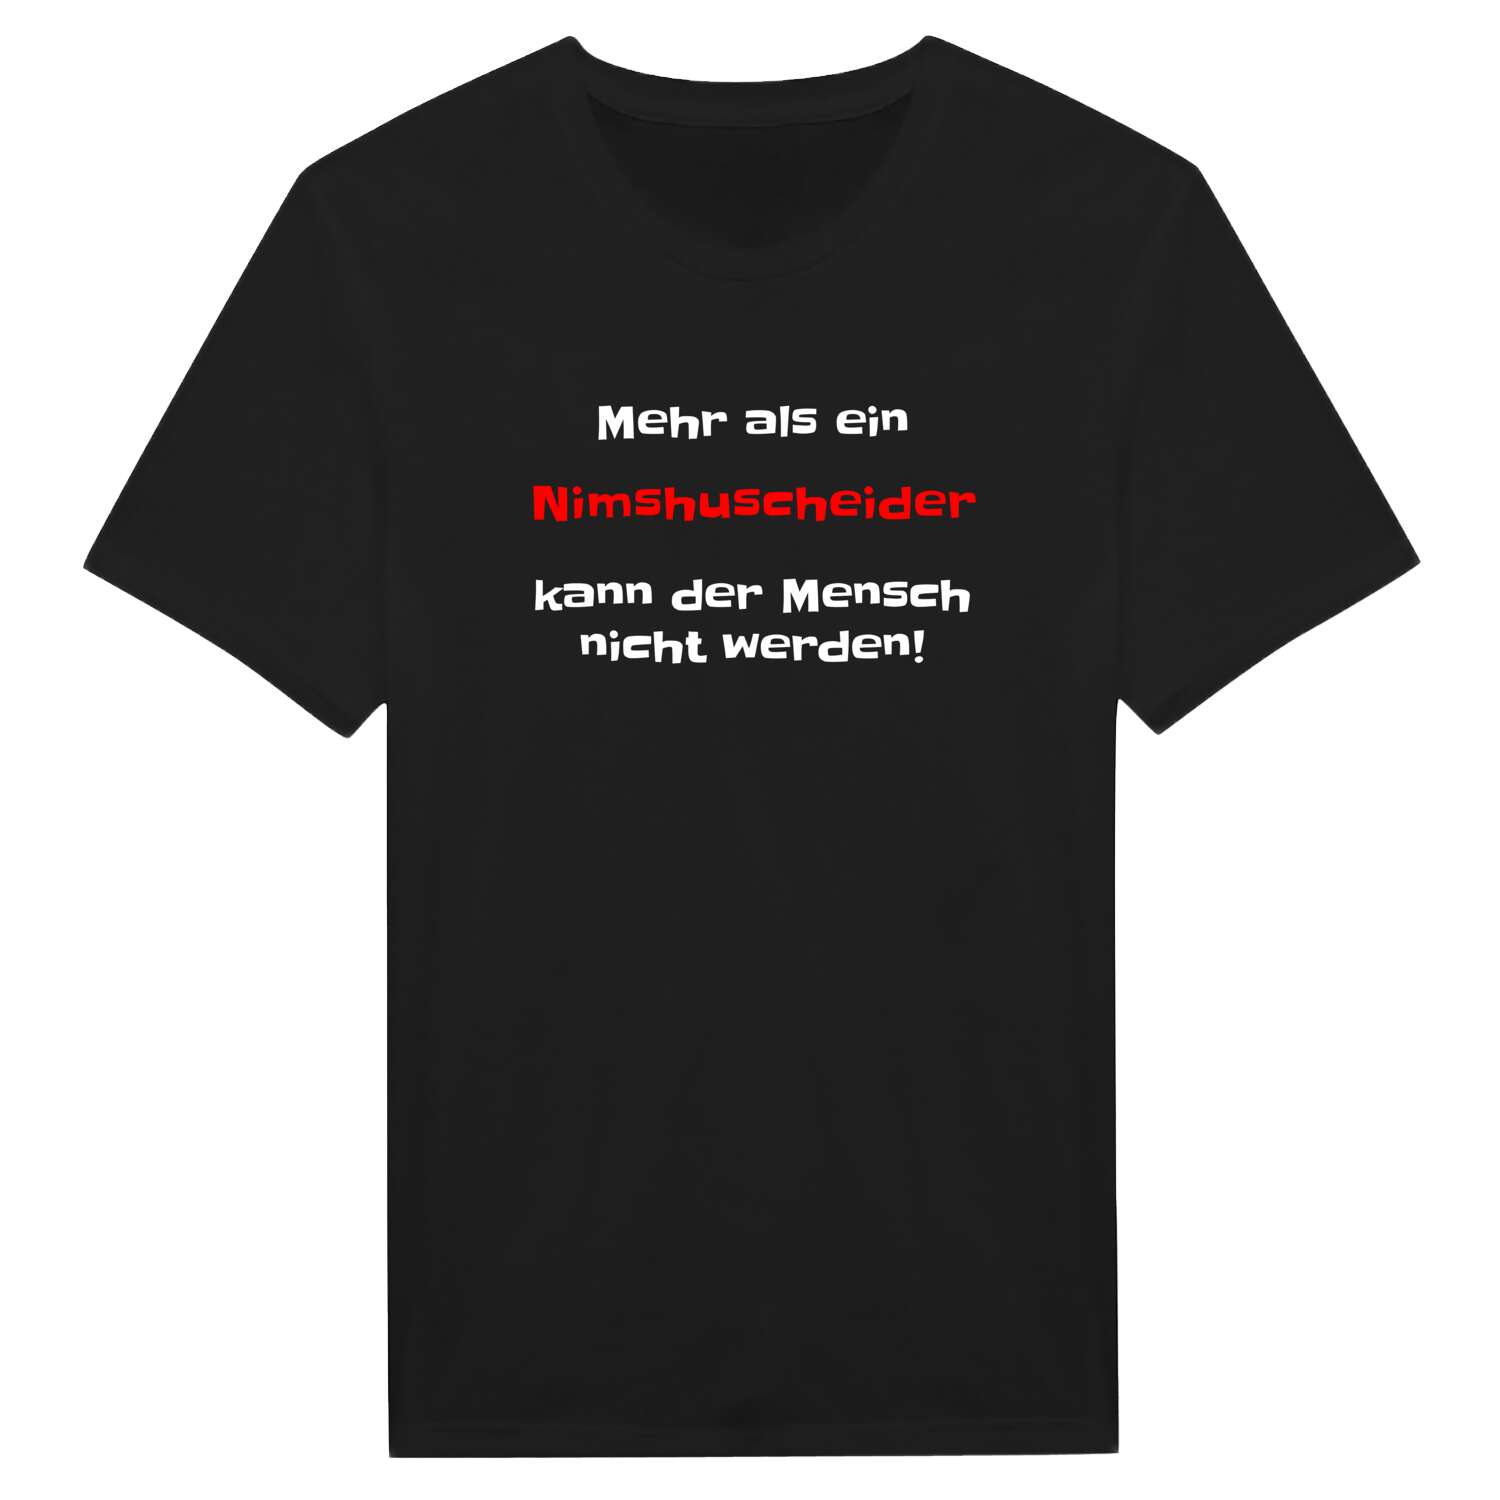 Nimshuscheid T-Shirt »Mehr als ein«